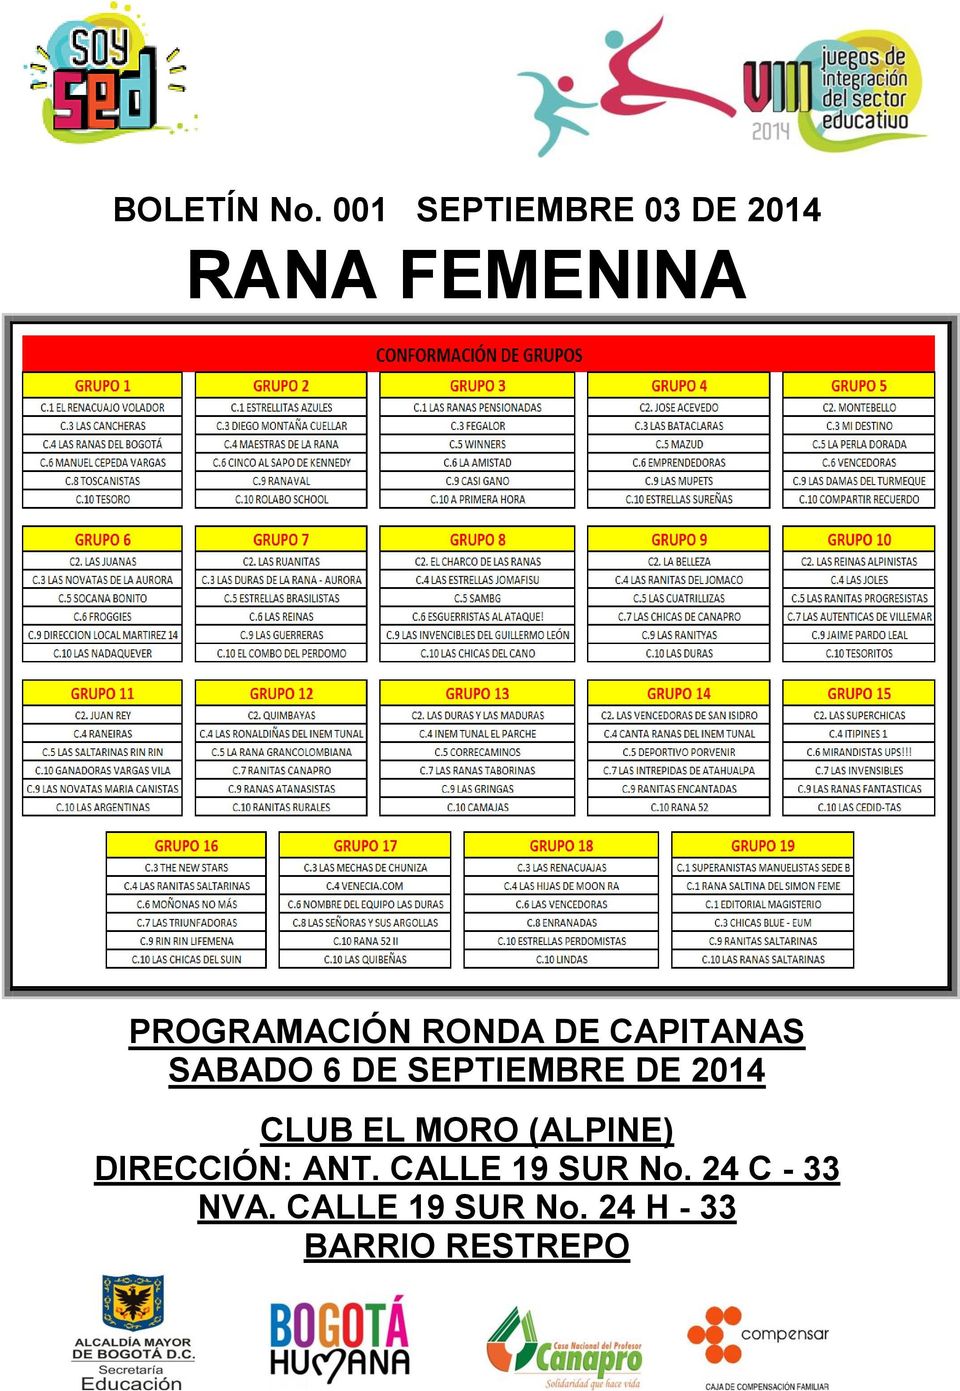 RONDA DE CAPITANAS SABADO 6 DE SEPTIEMBRE DE 2014 CLUB